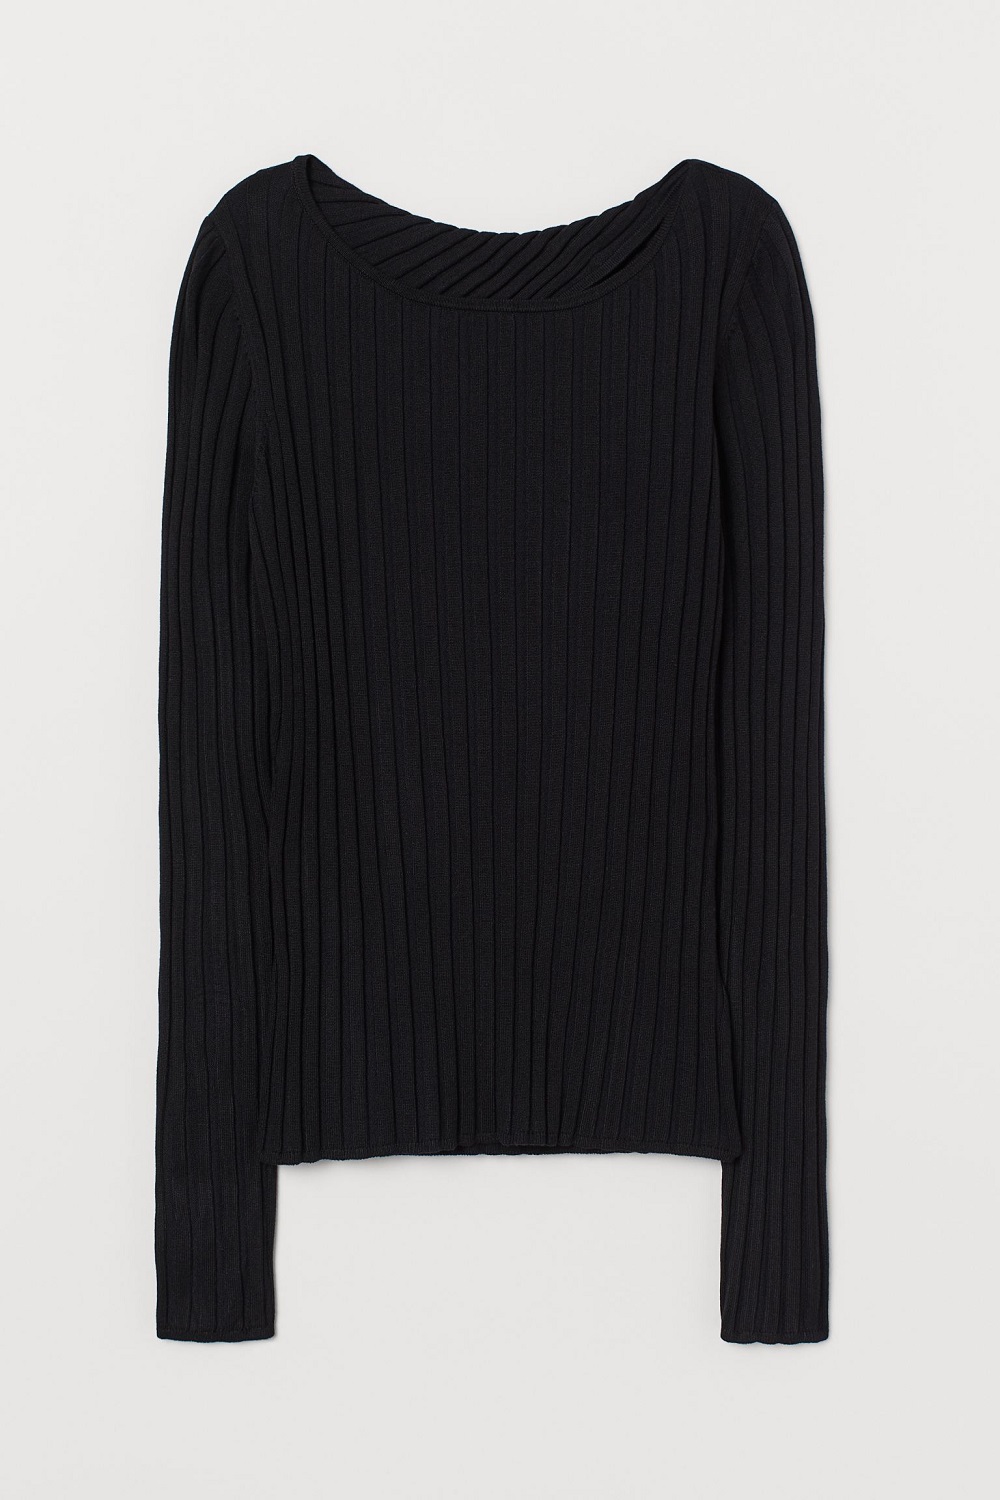 H&M pulover s otvorenim leđima jesen 2020.